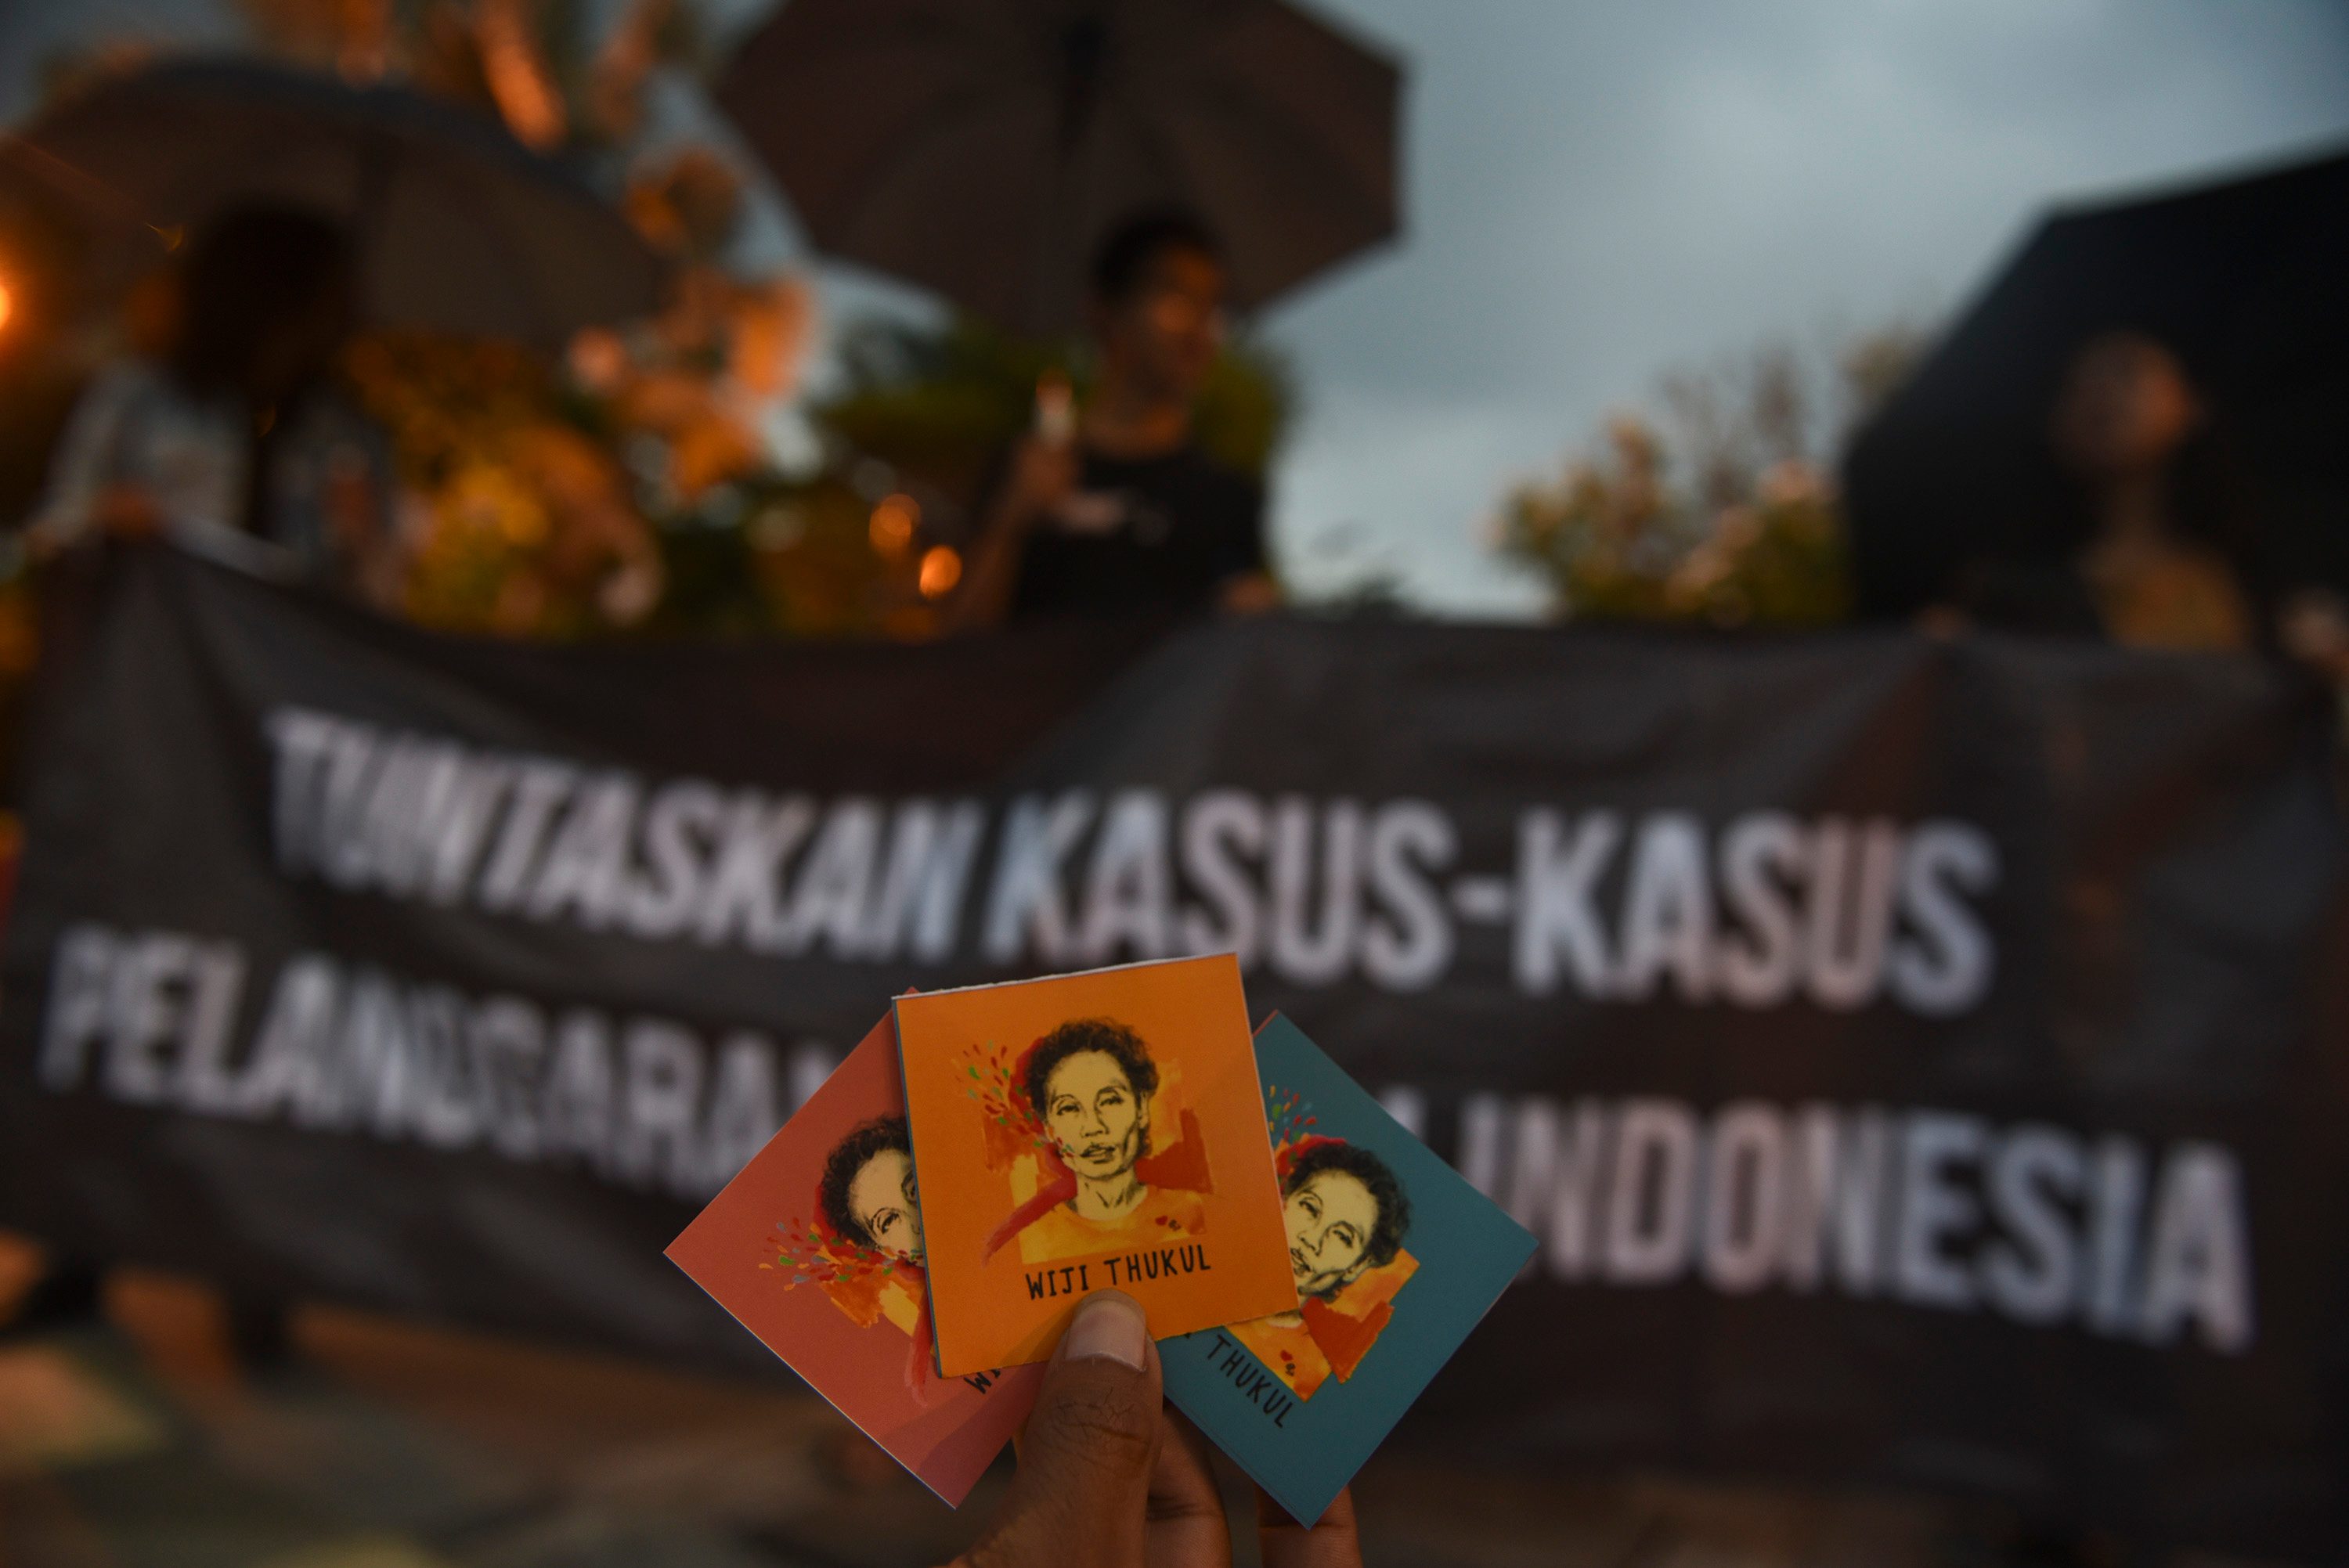 Demonstran menunjukan stiker Wiji Thukul saat gelar Aksi Kamisan di Surabaya, Jawa Timur, pada 19 Januari 2017. Foto oleh Zabur Karuru/Antara 